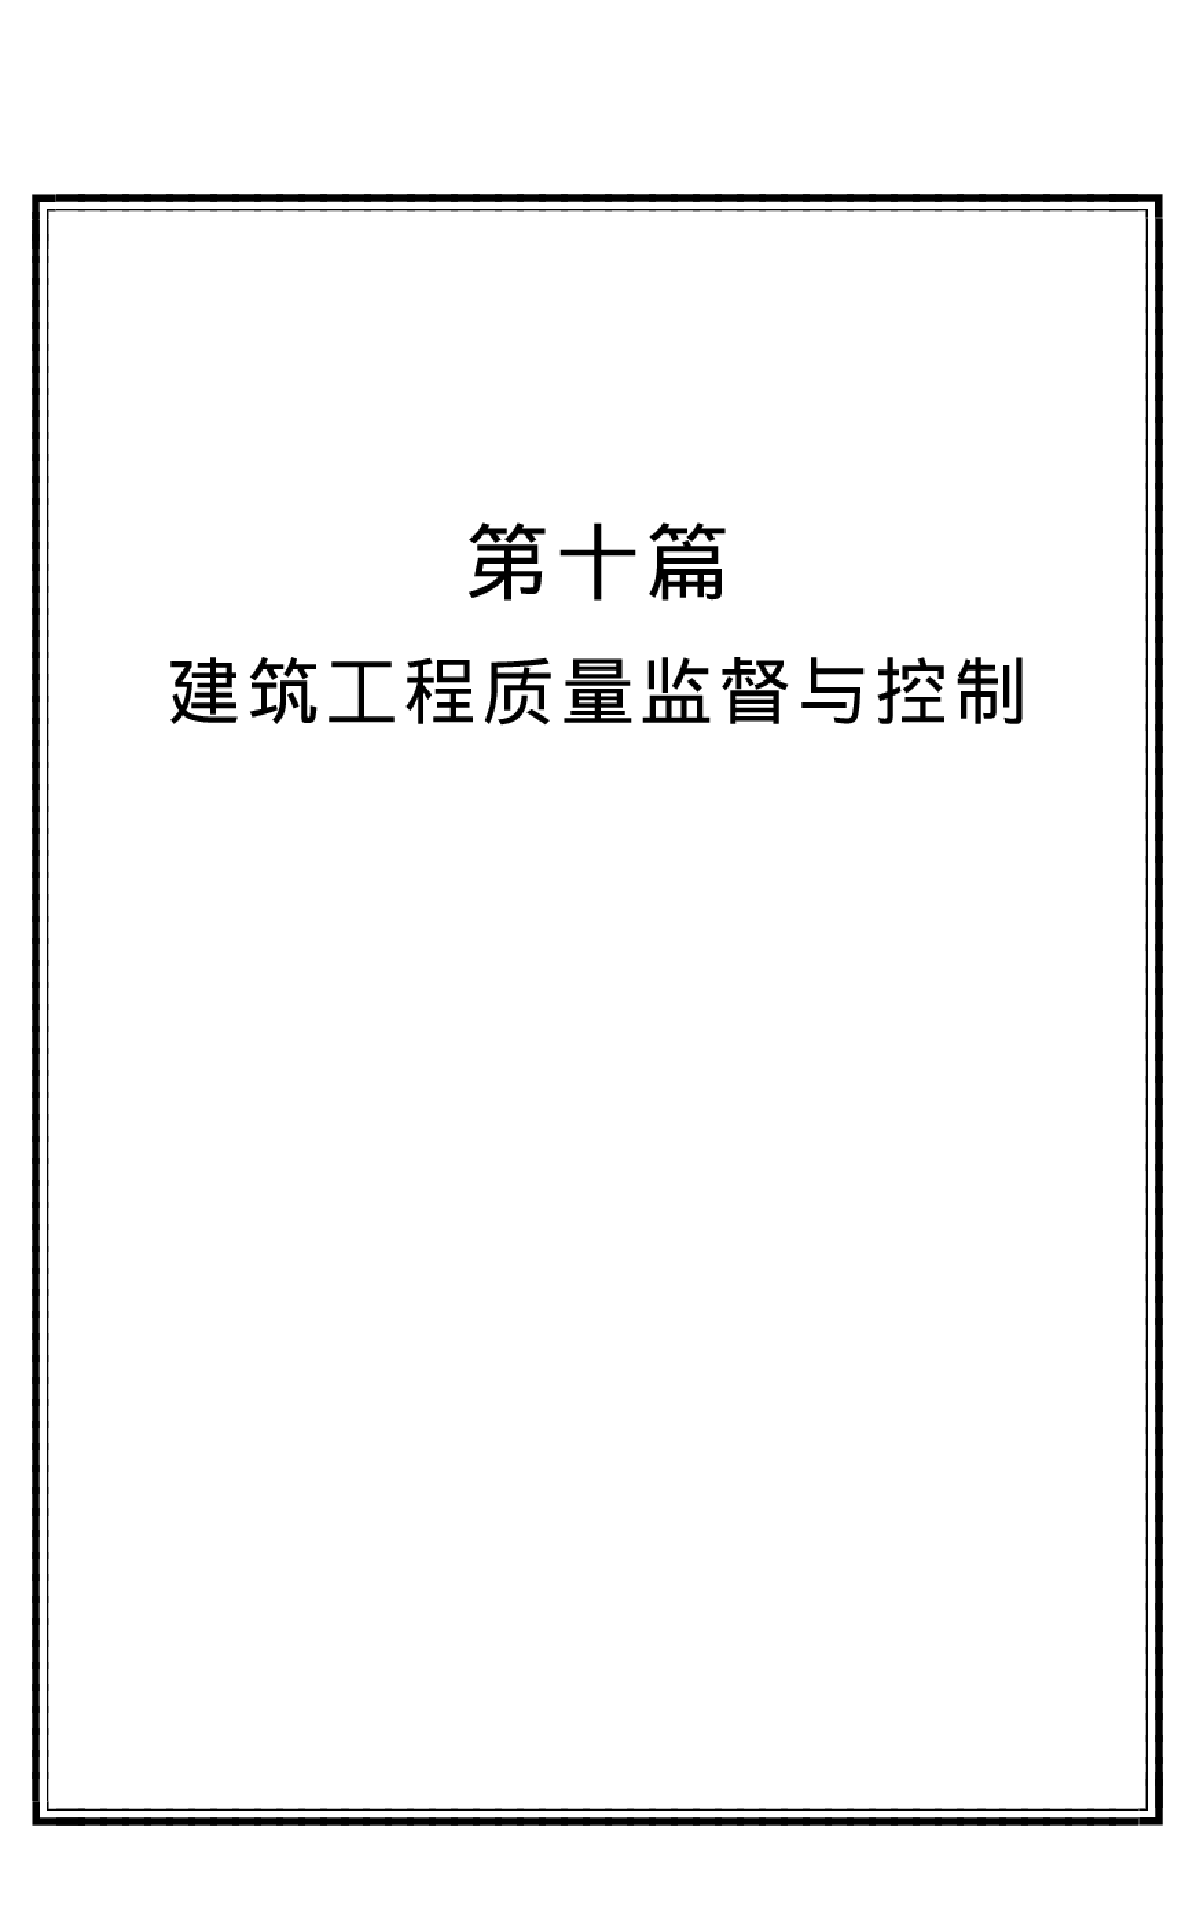 建筑工程重大禁忌全书-14